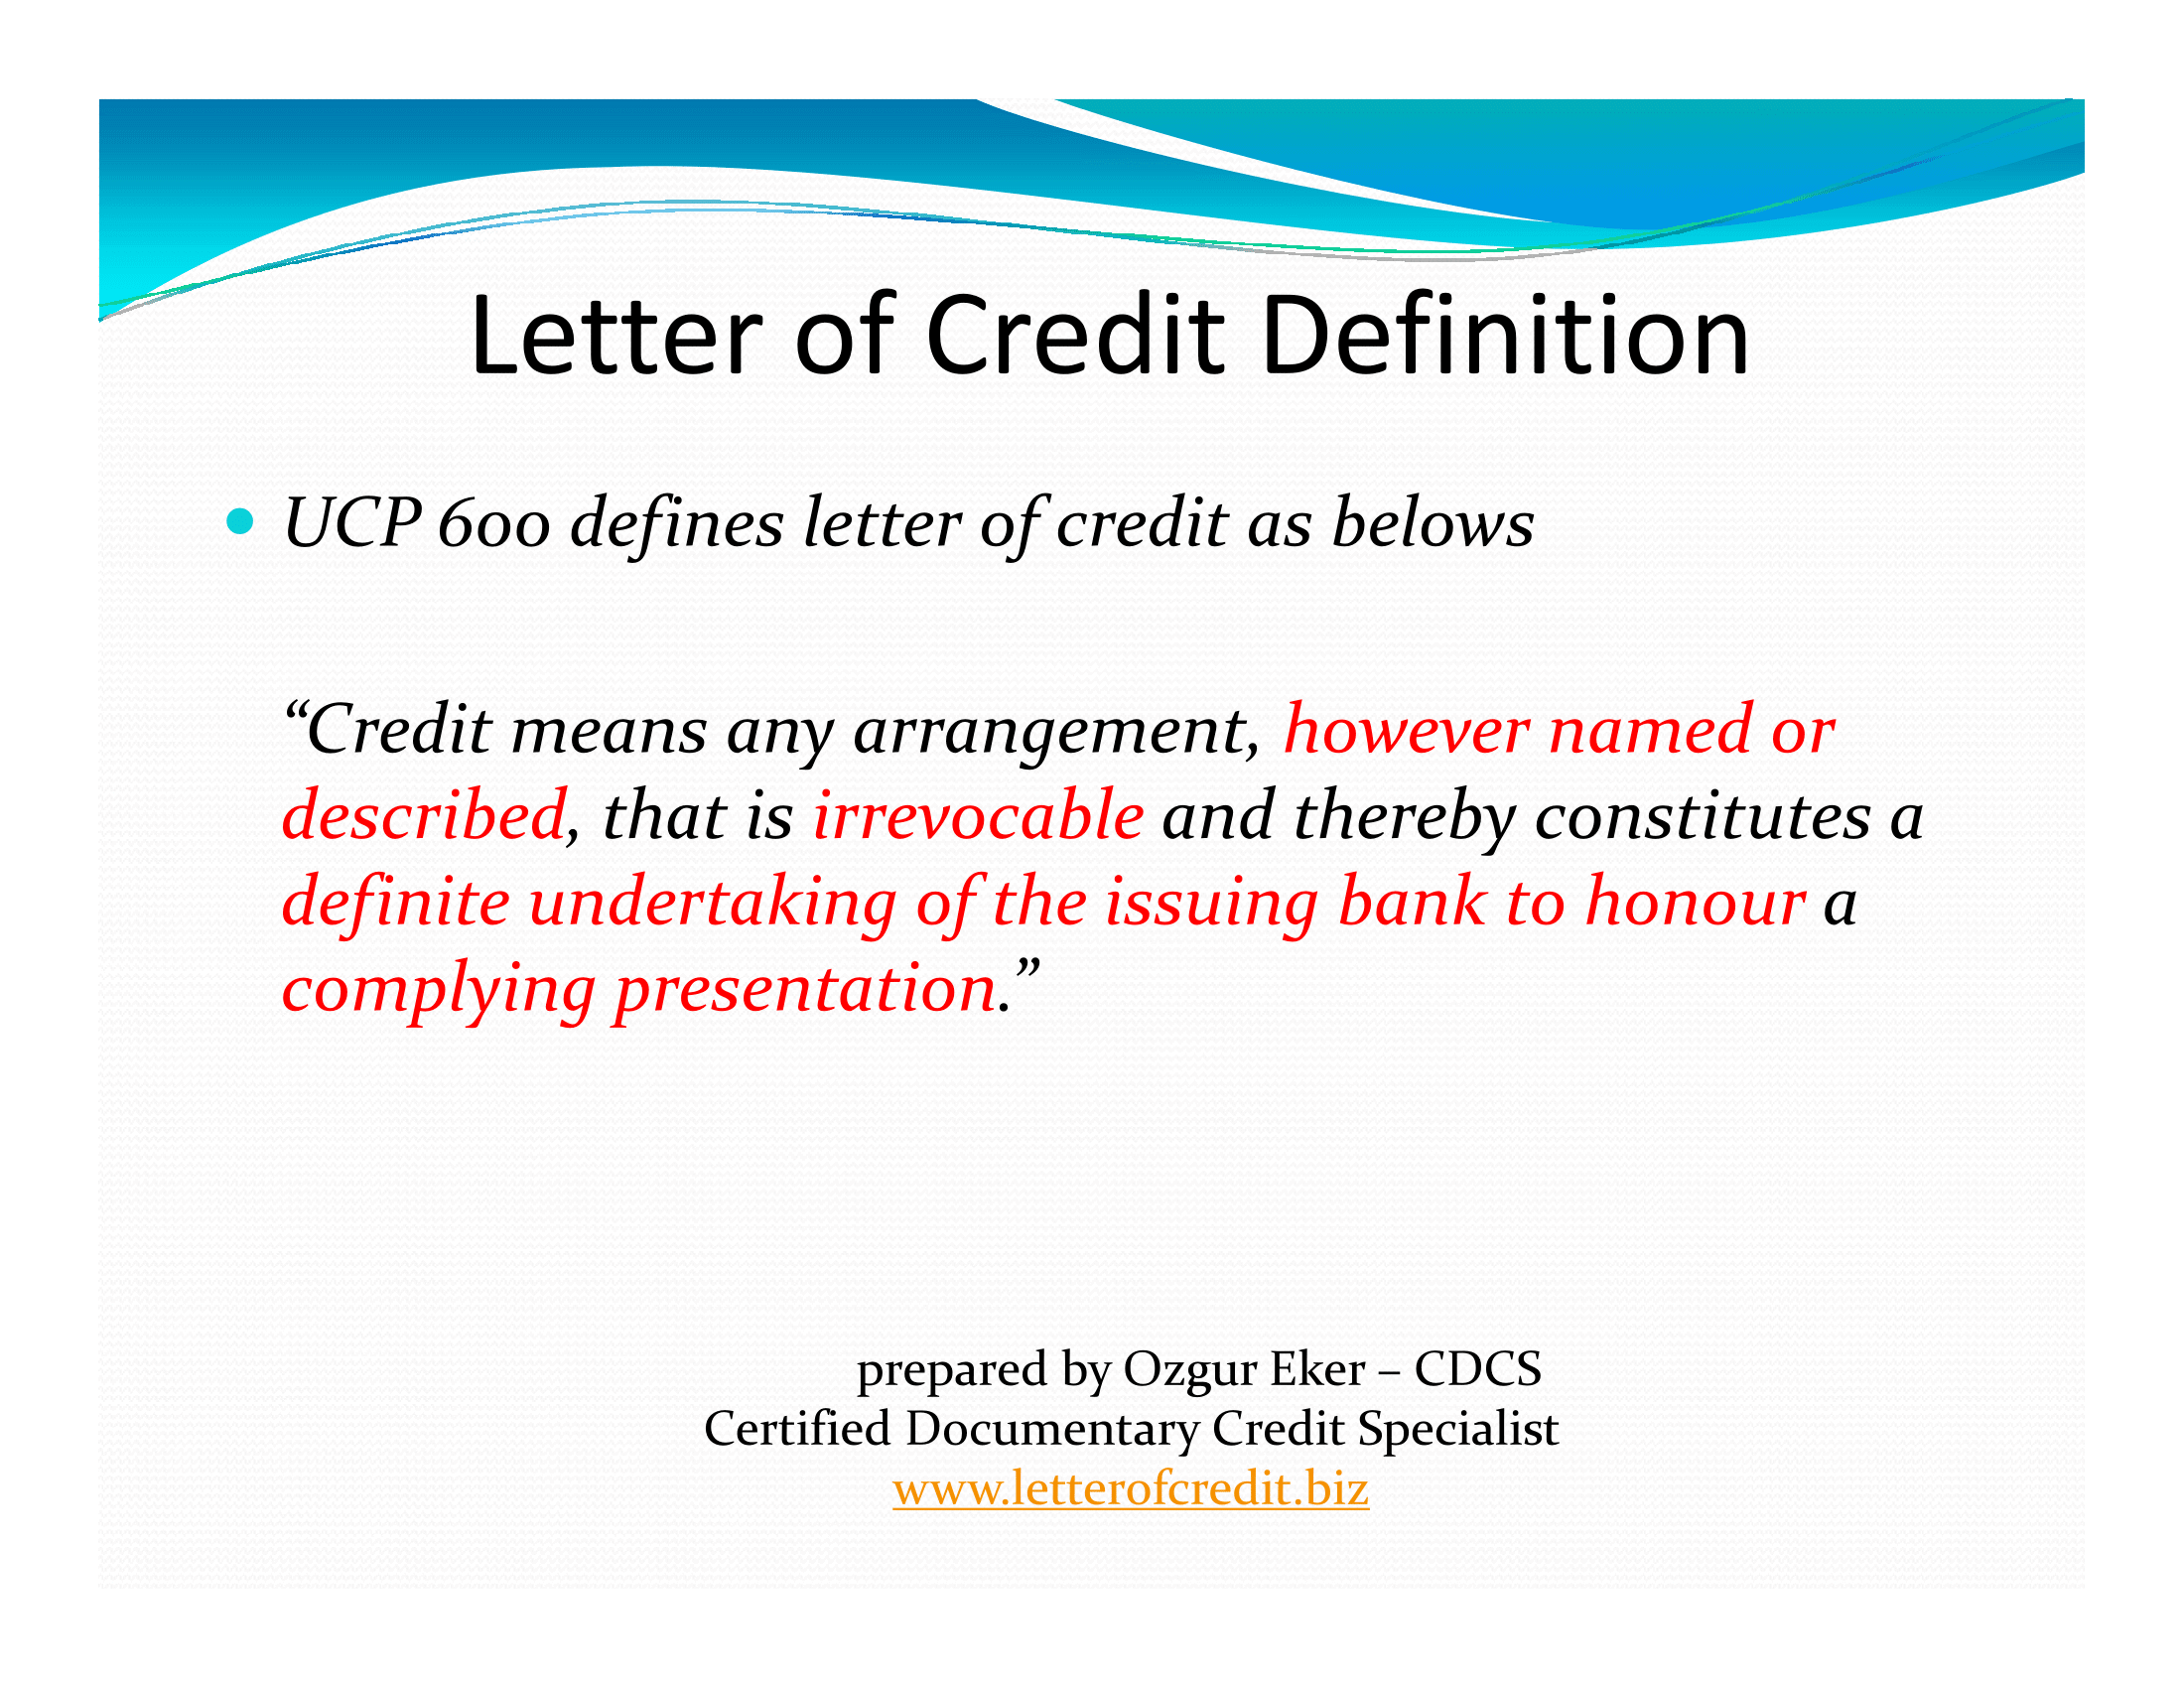 presentation on letter of credit